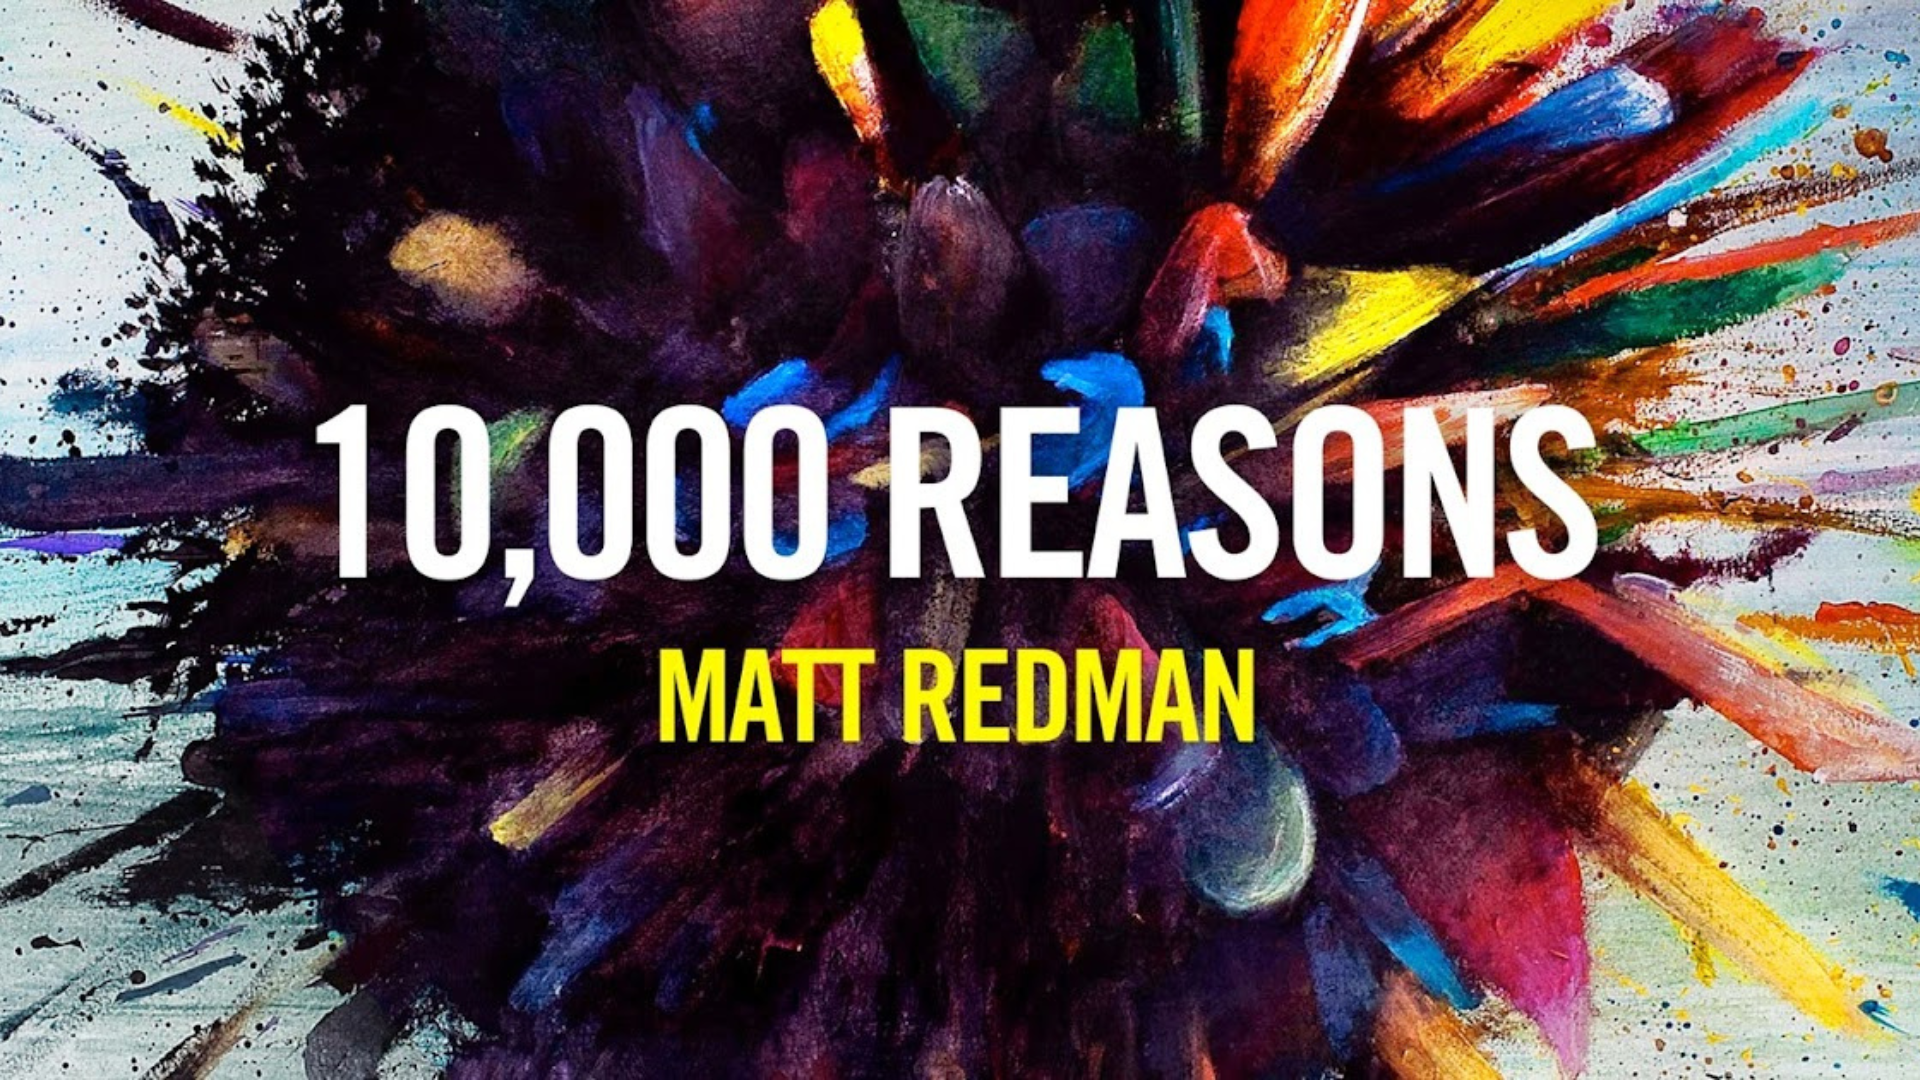 Matt Redman - 10,000 Reasons (Bless the Lord)